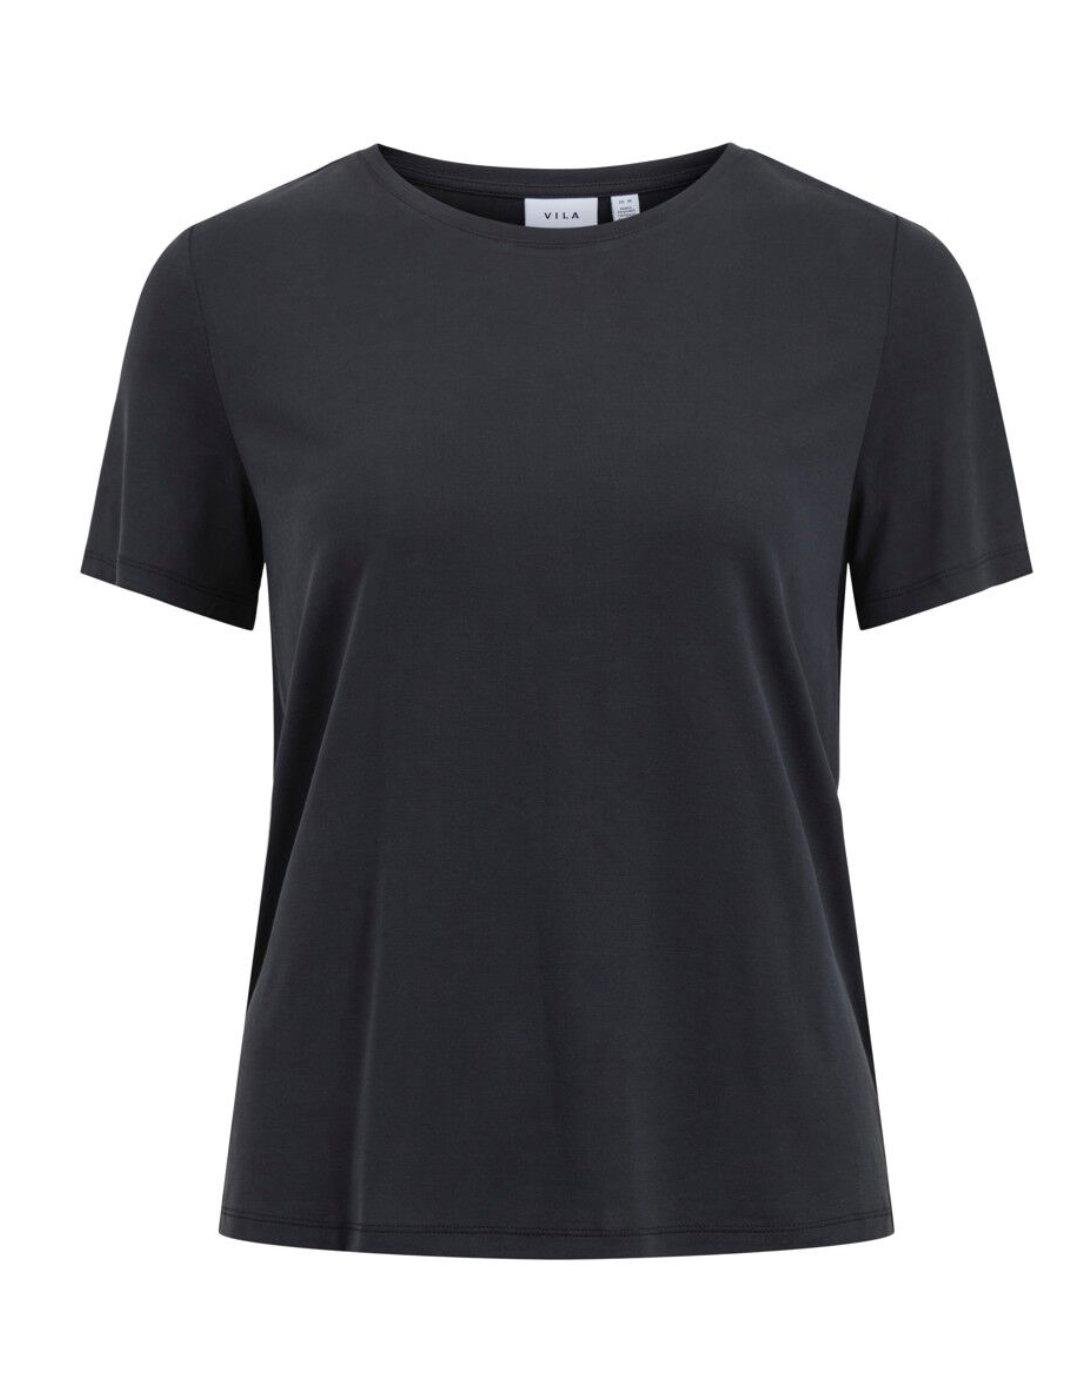 Camiseta Vila de manga corta y cuello redondo negra de mujer